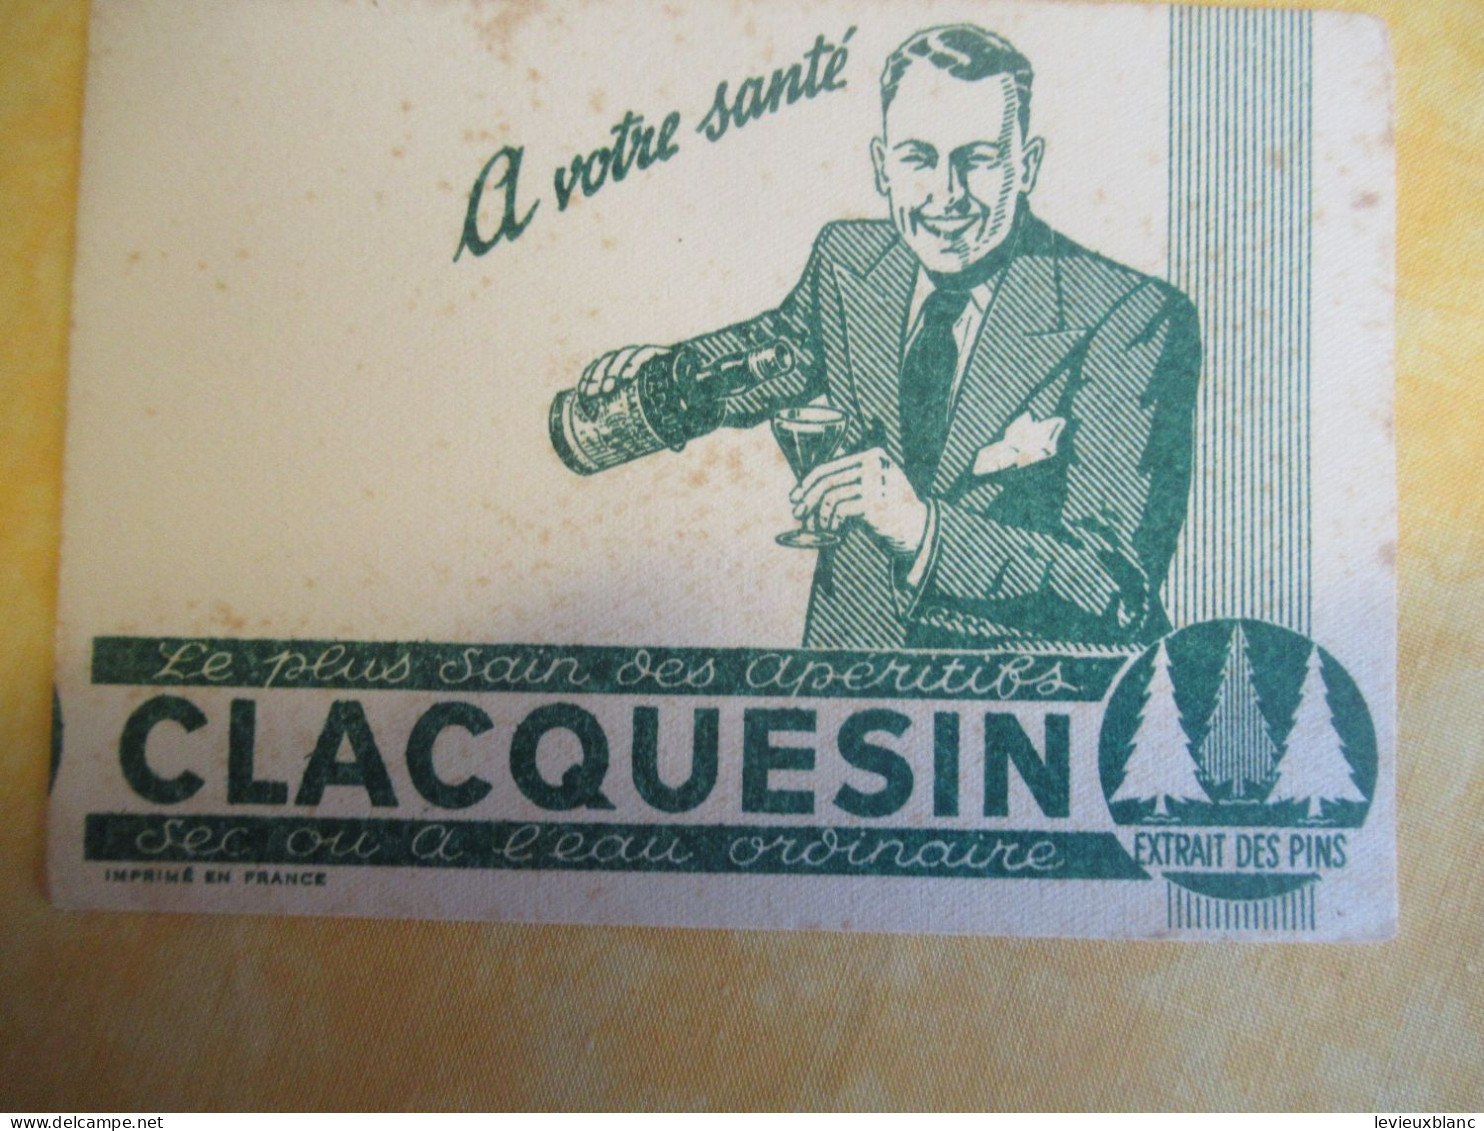 2 Petits Buvards Anciens /Liqueur/CLACQUESIN/ Extrait Des Pins/En été à L'eau Fraîche/Vers 1950-1960      BUV702 - Licores & Cervezas